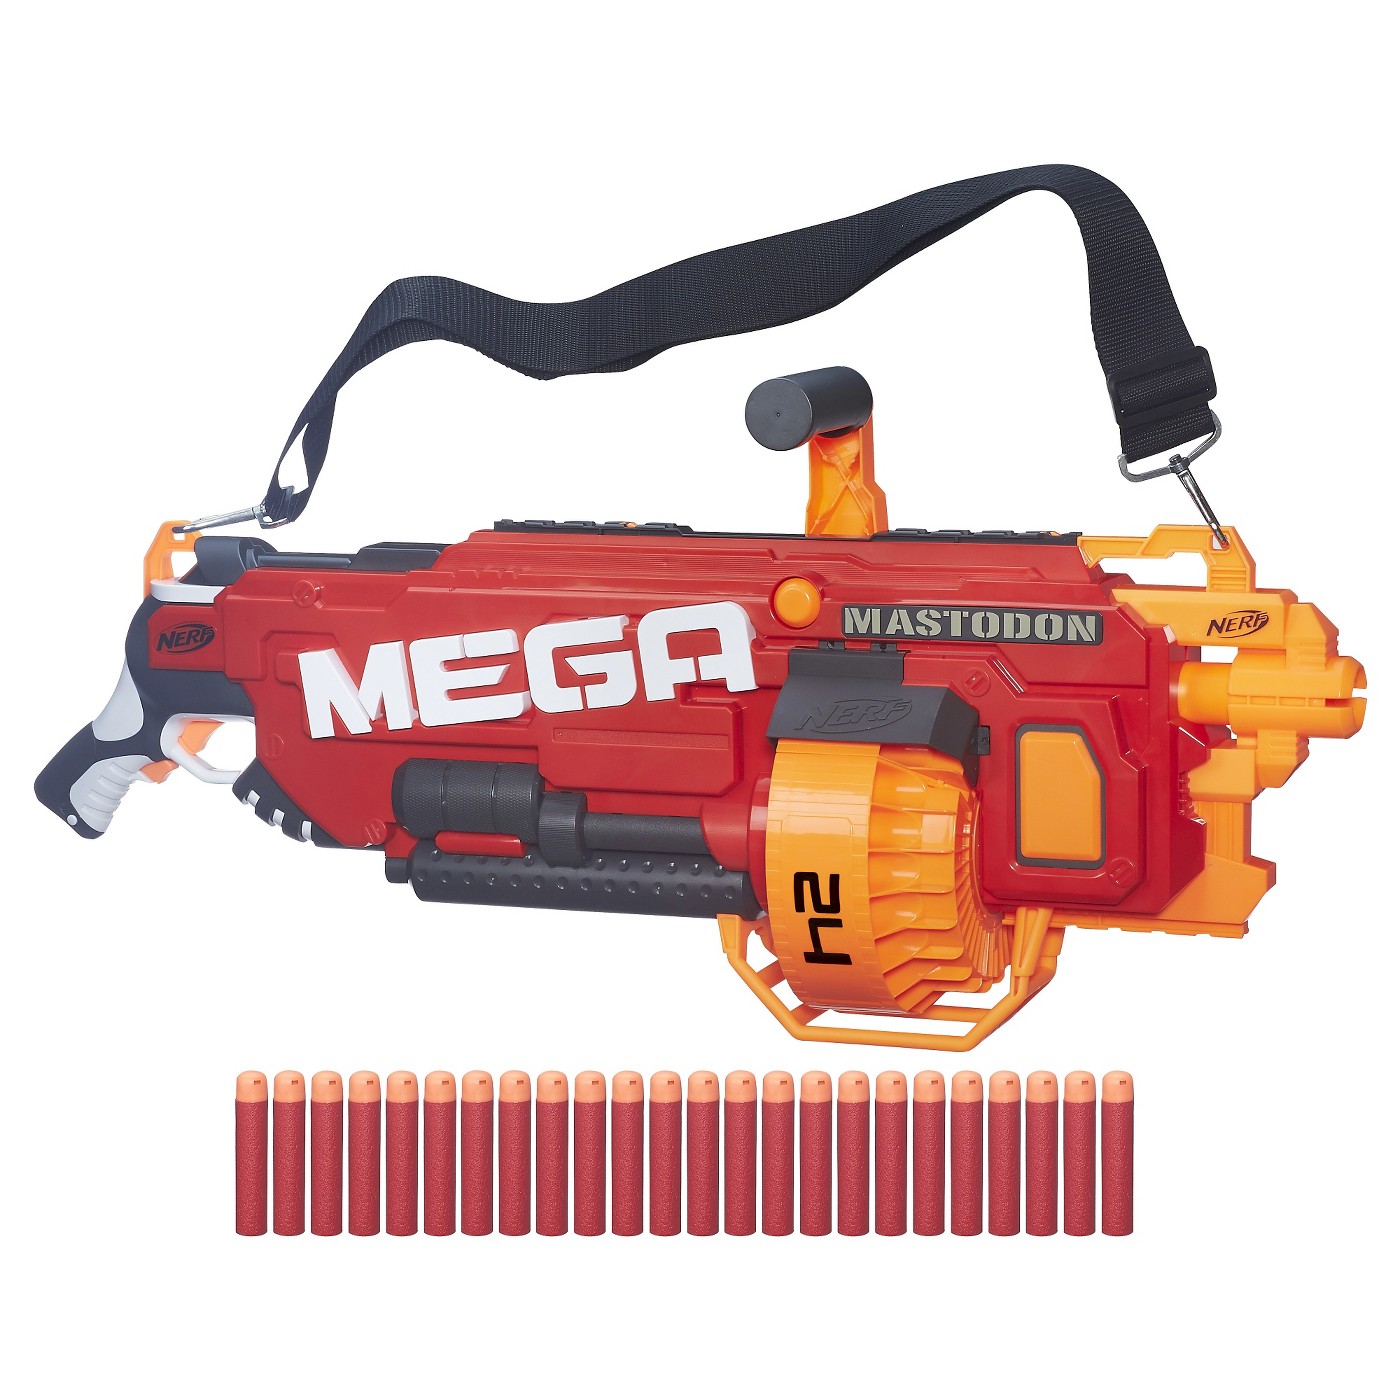 NERF N-Strike Mega Mastodon Blaster - image 1 of 5